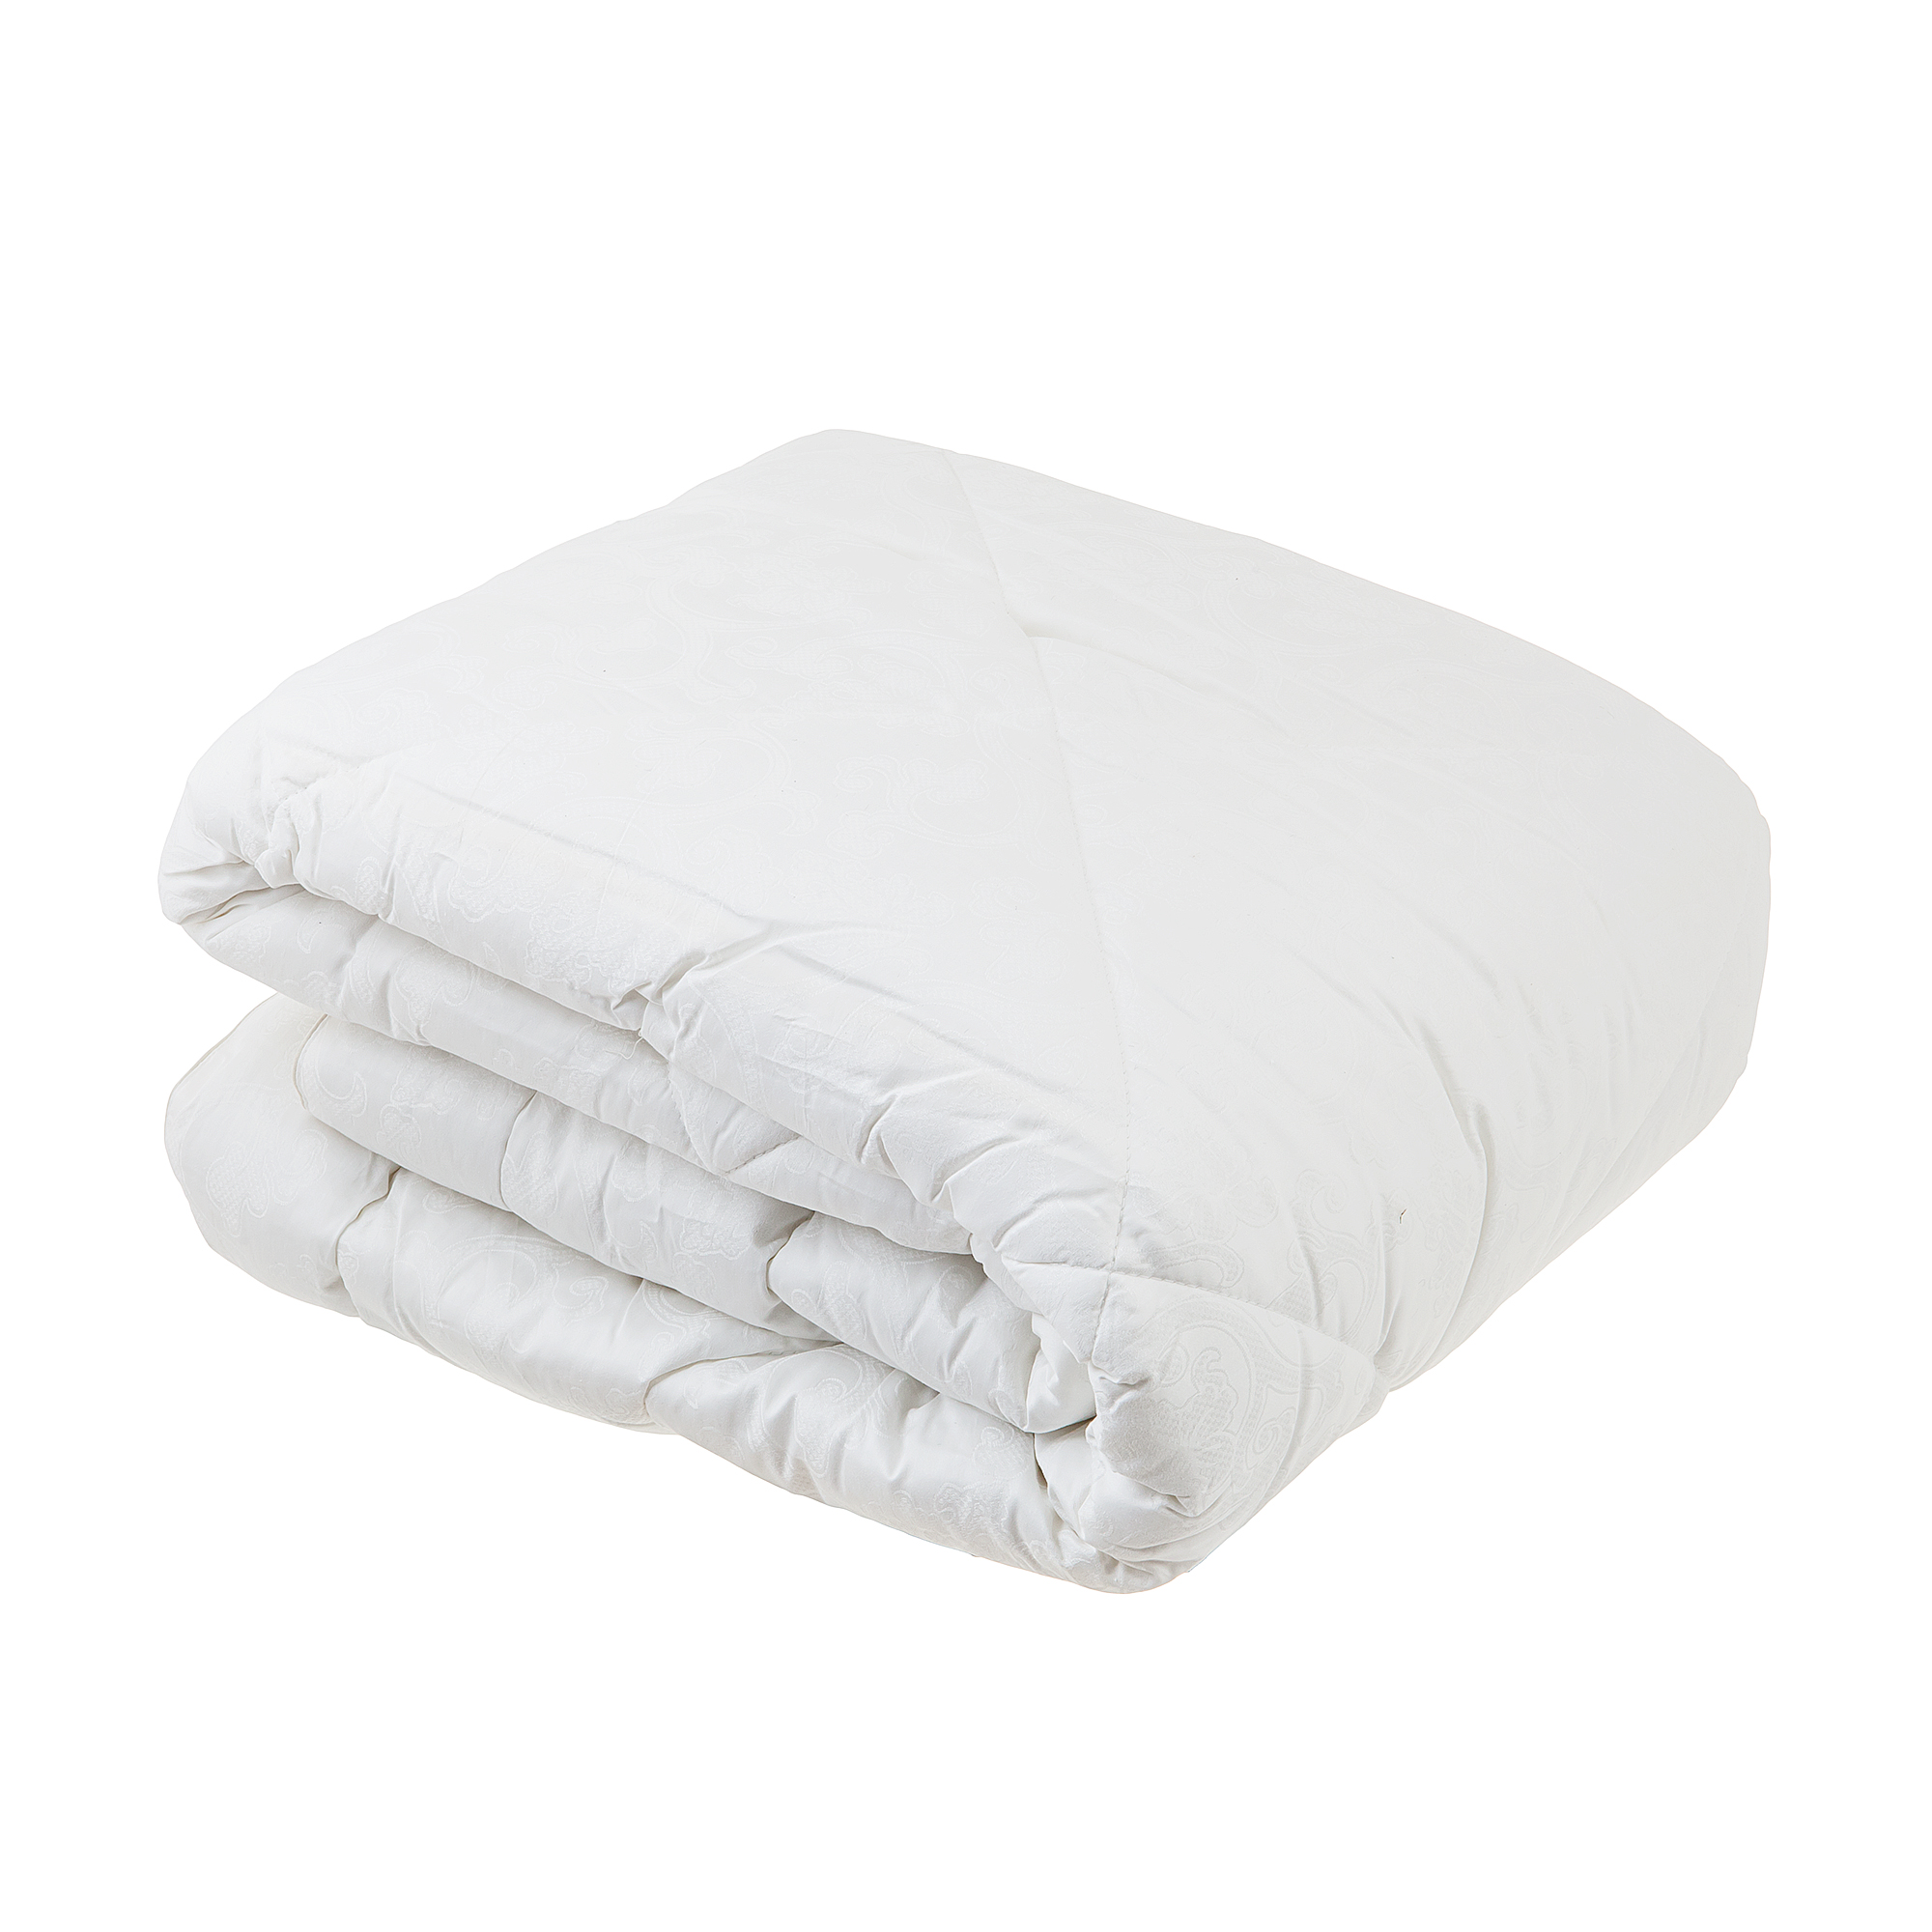 Одеяло стеганое легкое Belashoff белое золото 172x205 одеяло легкое 140x205 см файберсофт